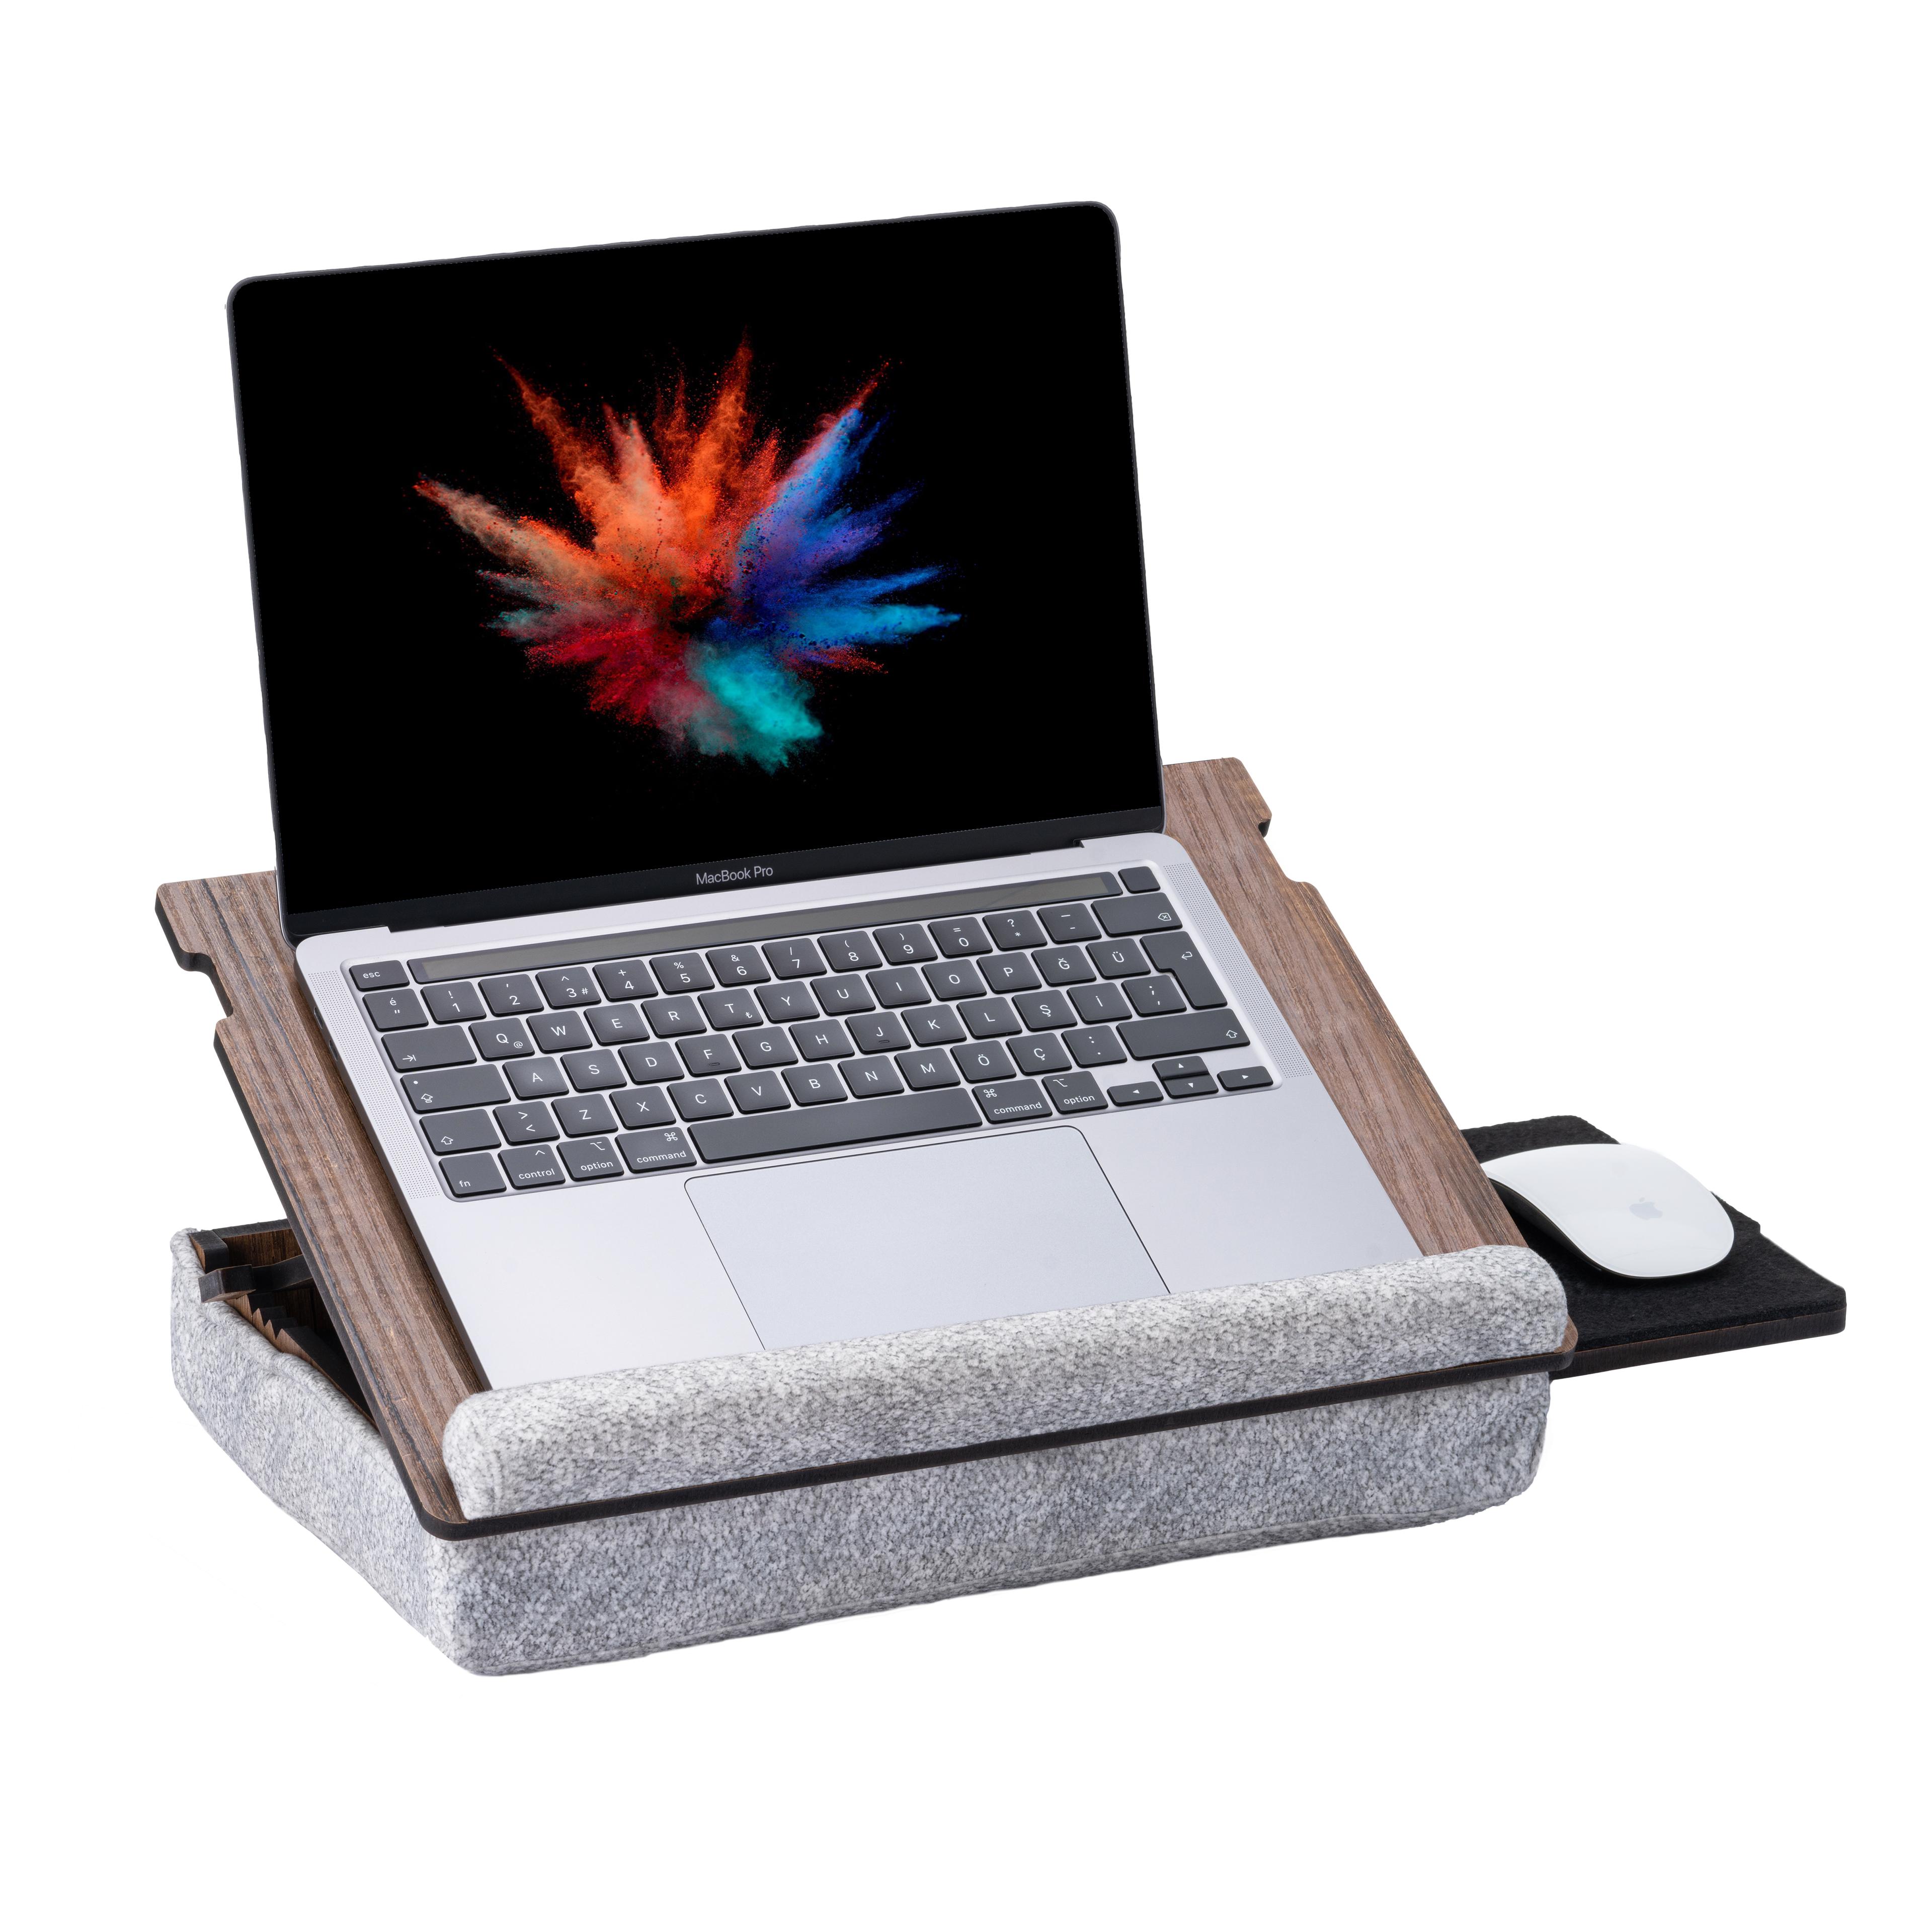 Laptopkissen - Laptray mit Kissen, Laptop Tisch für Sofa, Lap Desk für Laptop